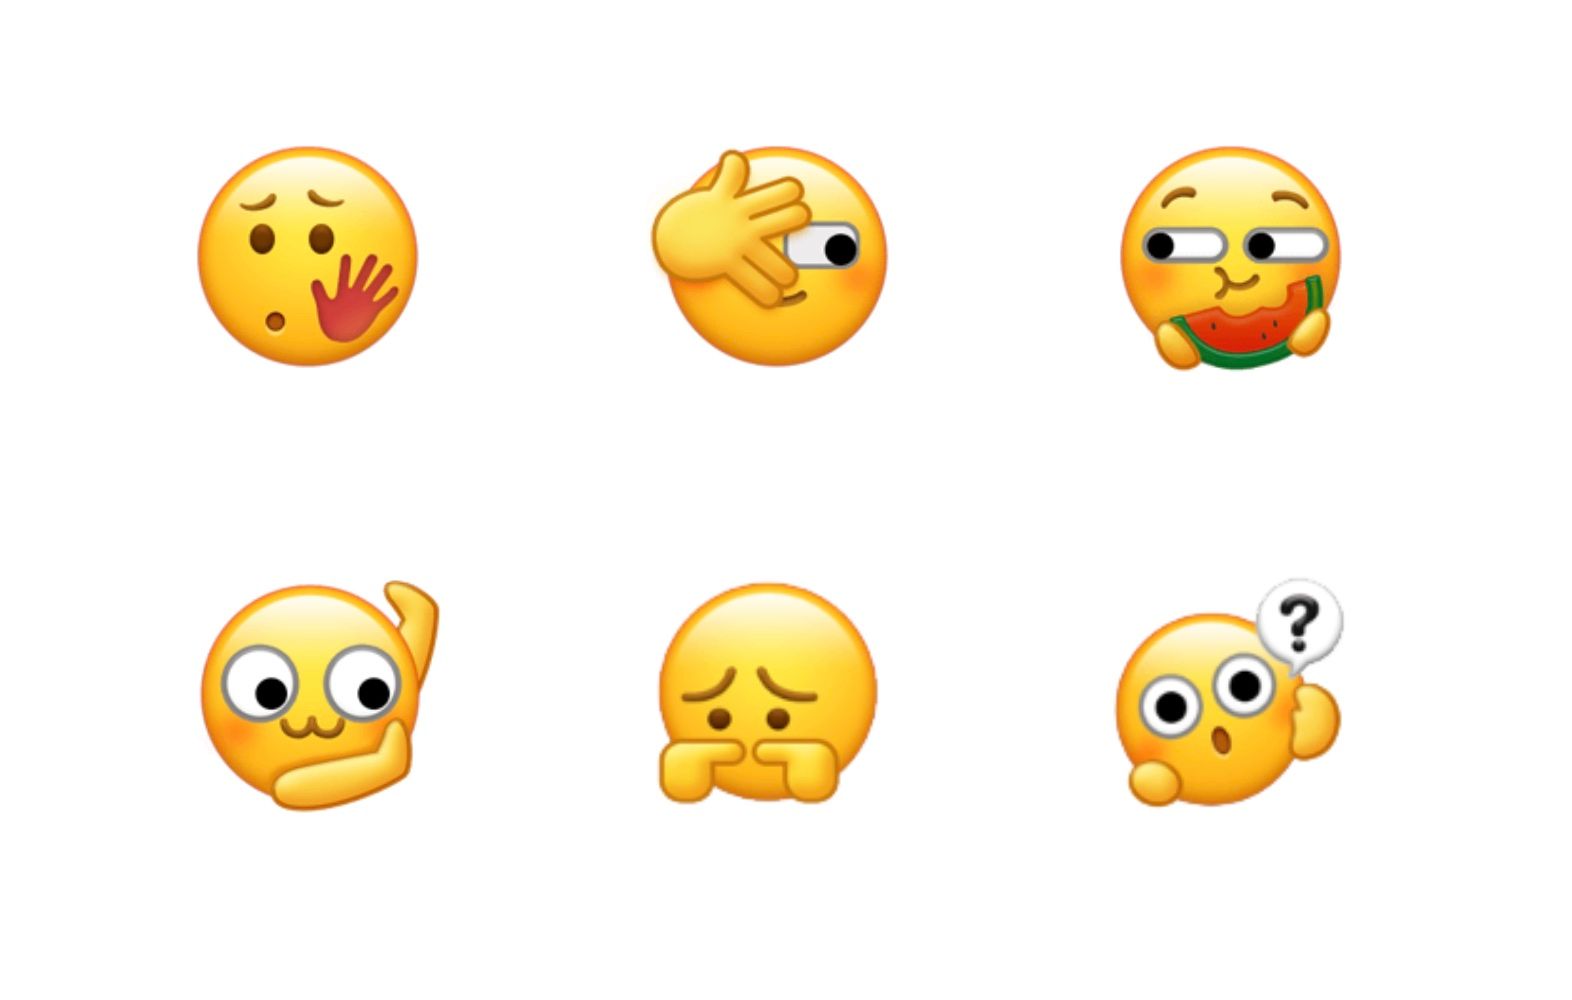 wechat emoji meaning?